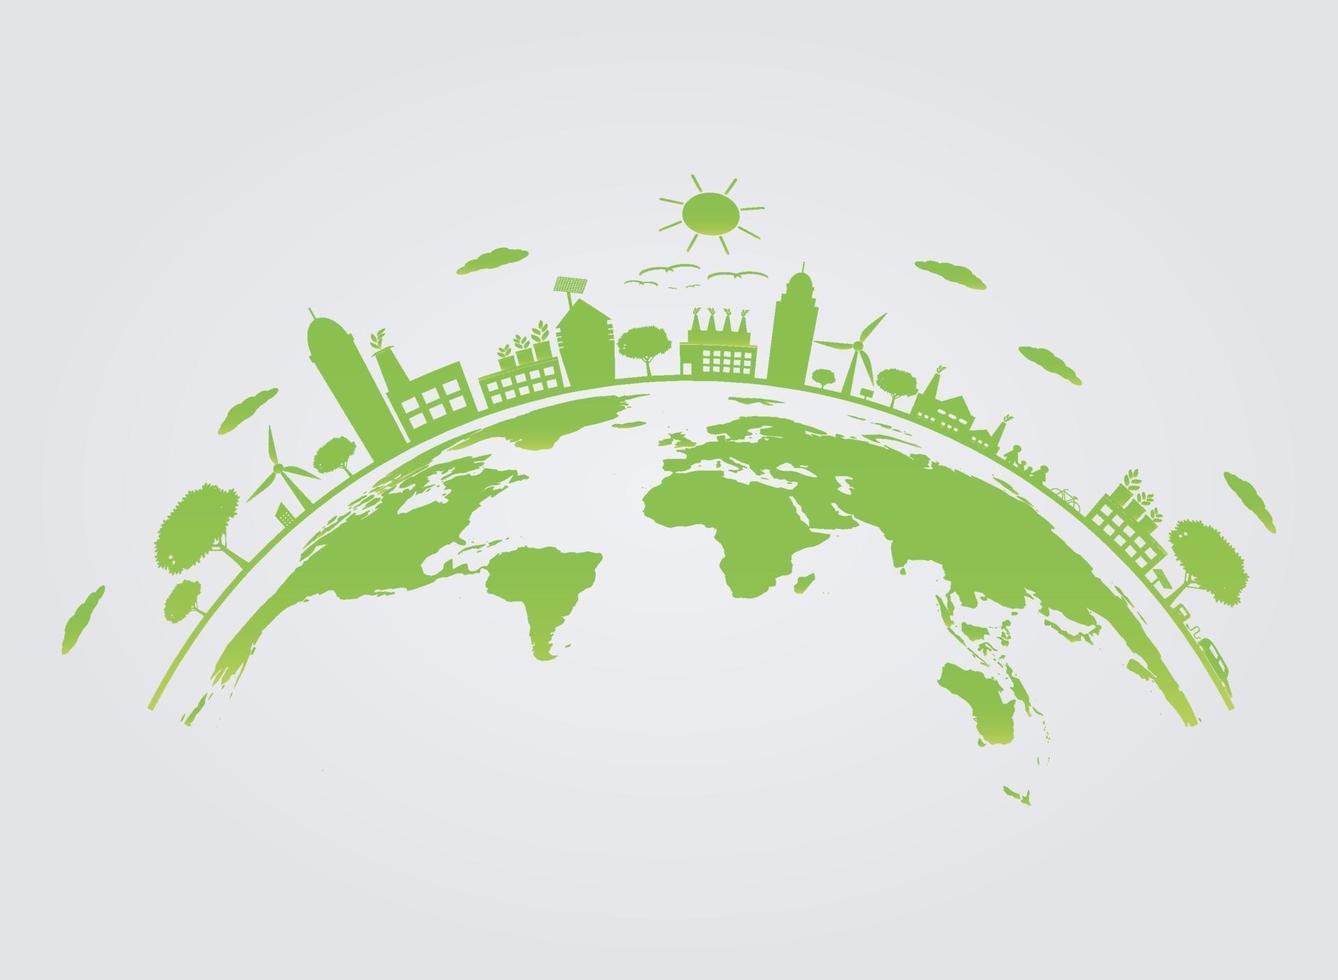 ekologi. gröna städer hjälper världen med miljövänliga konceptidéer. vektorillustration vektor